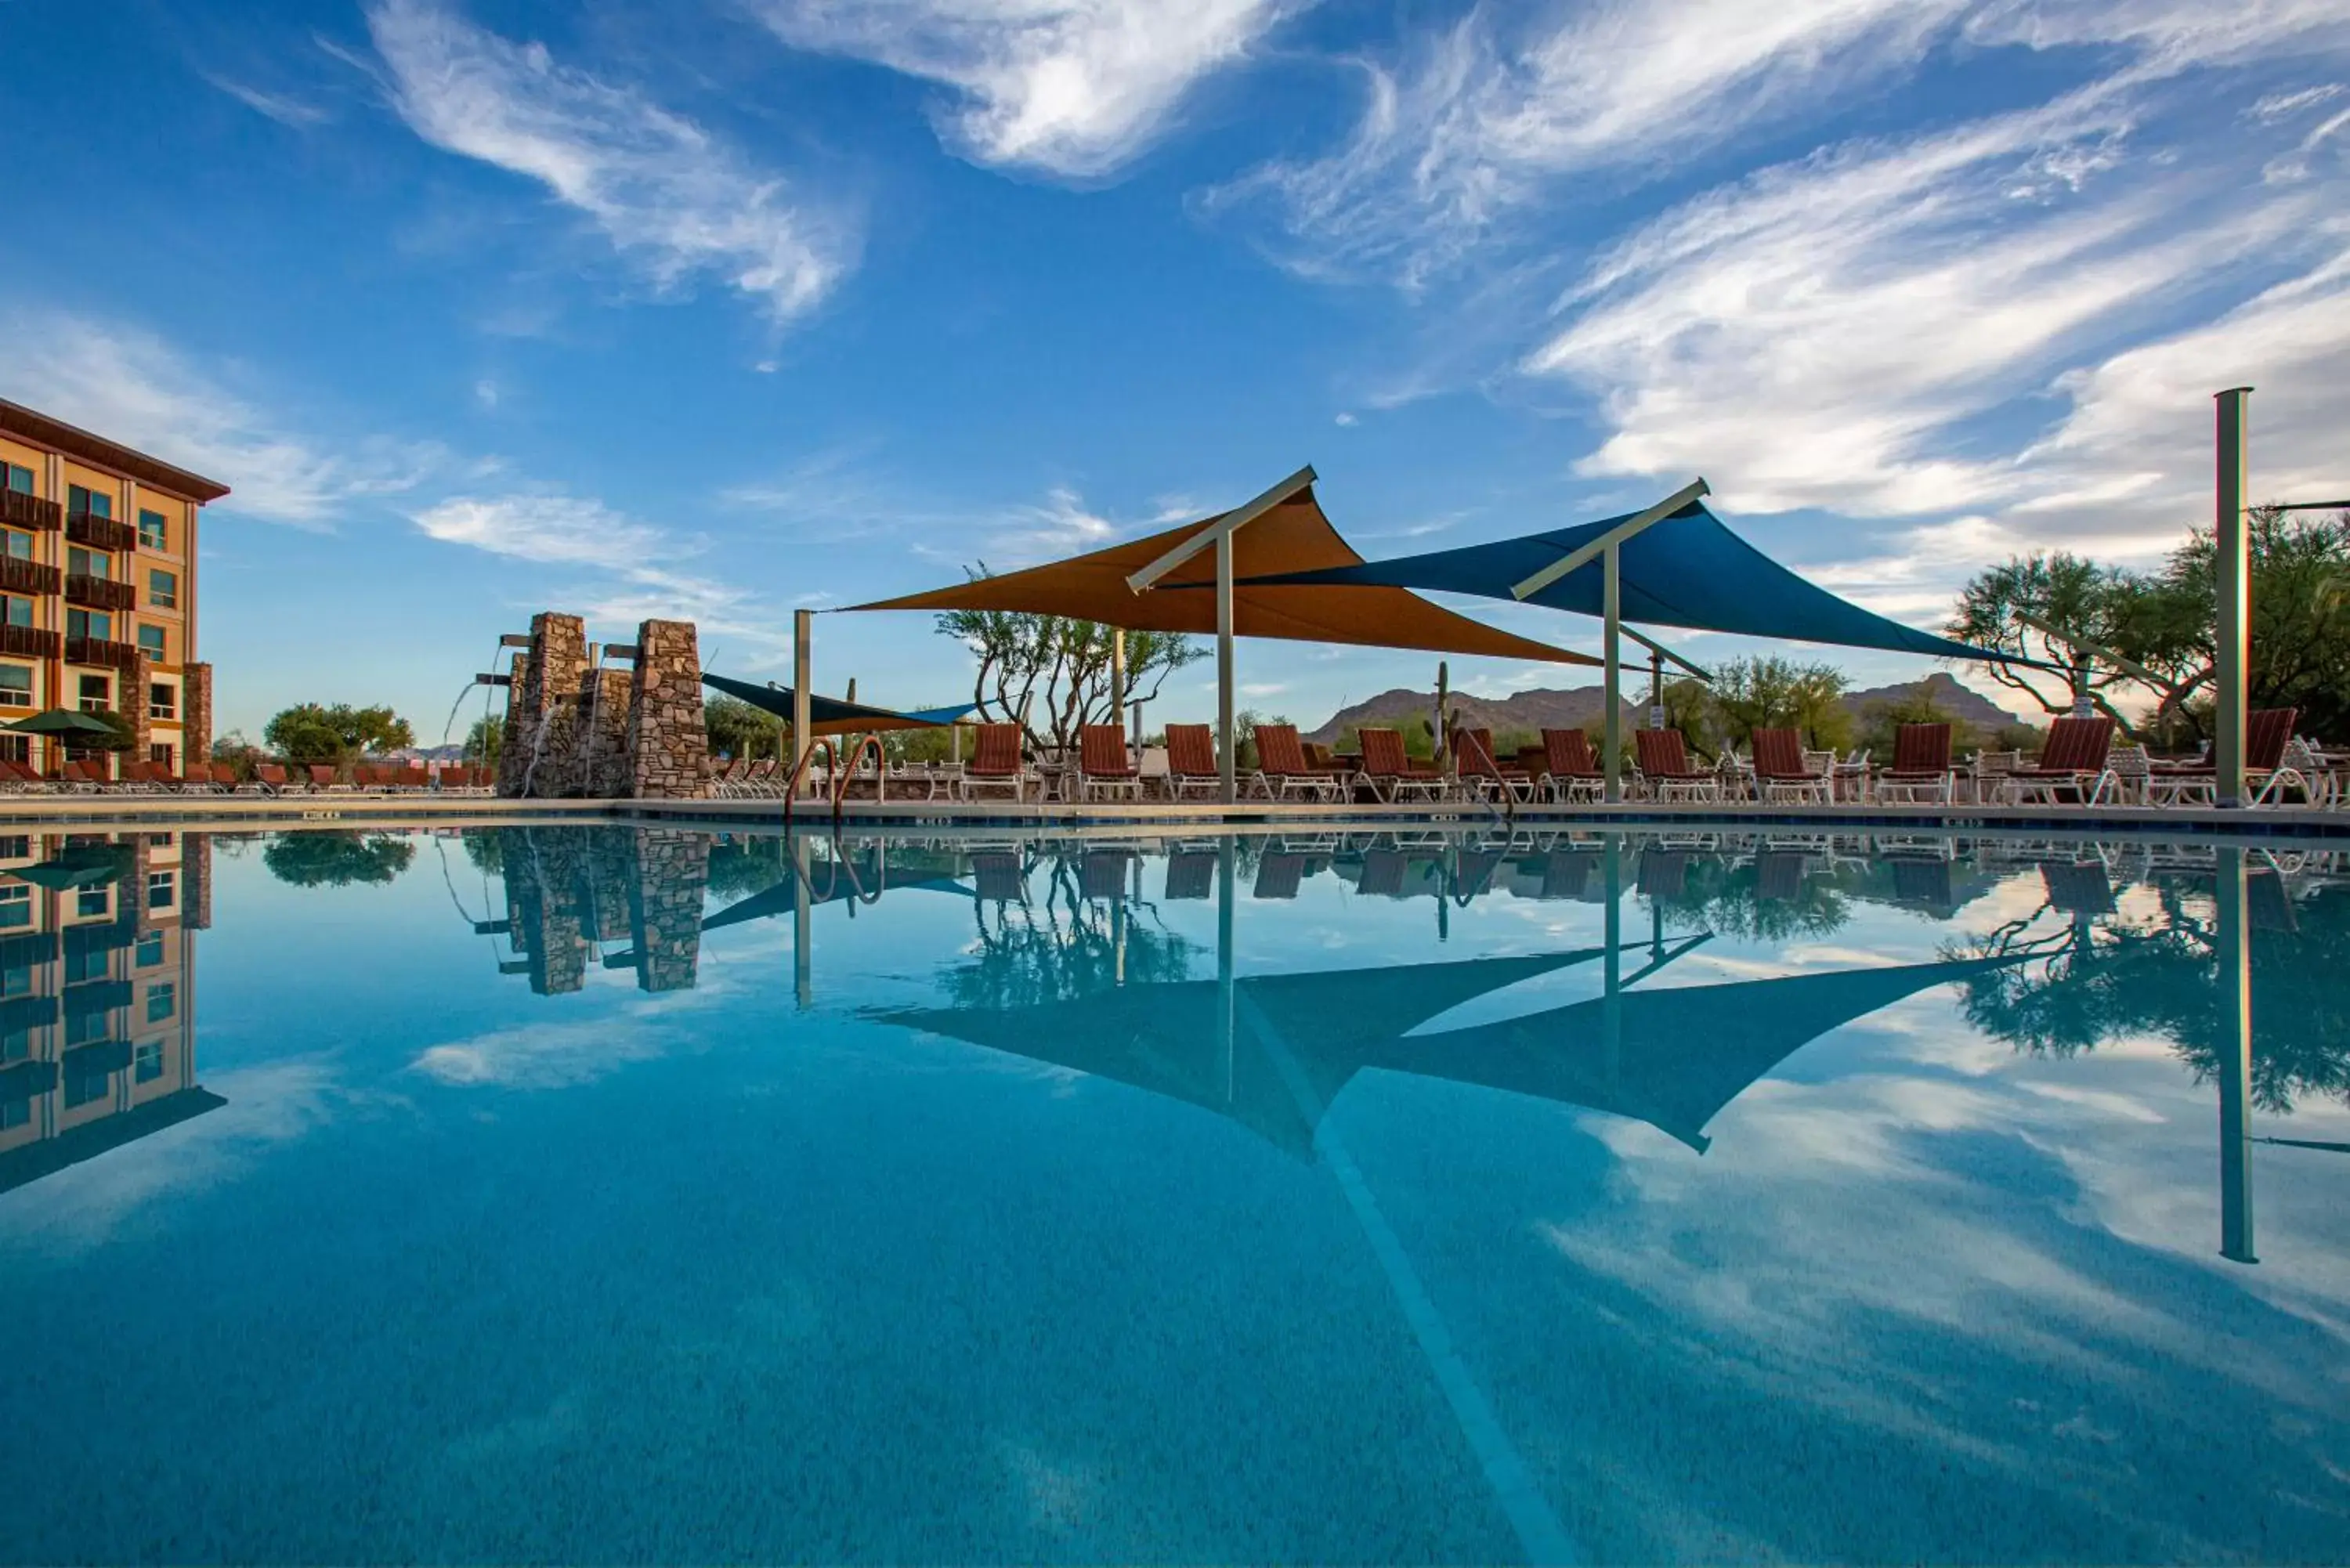 Swimming Pool in Wekopa Casino Resort